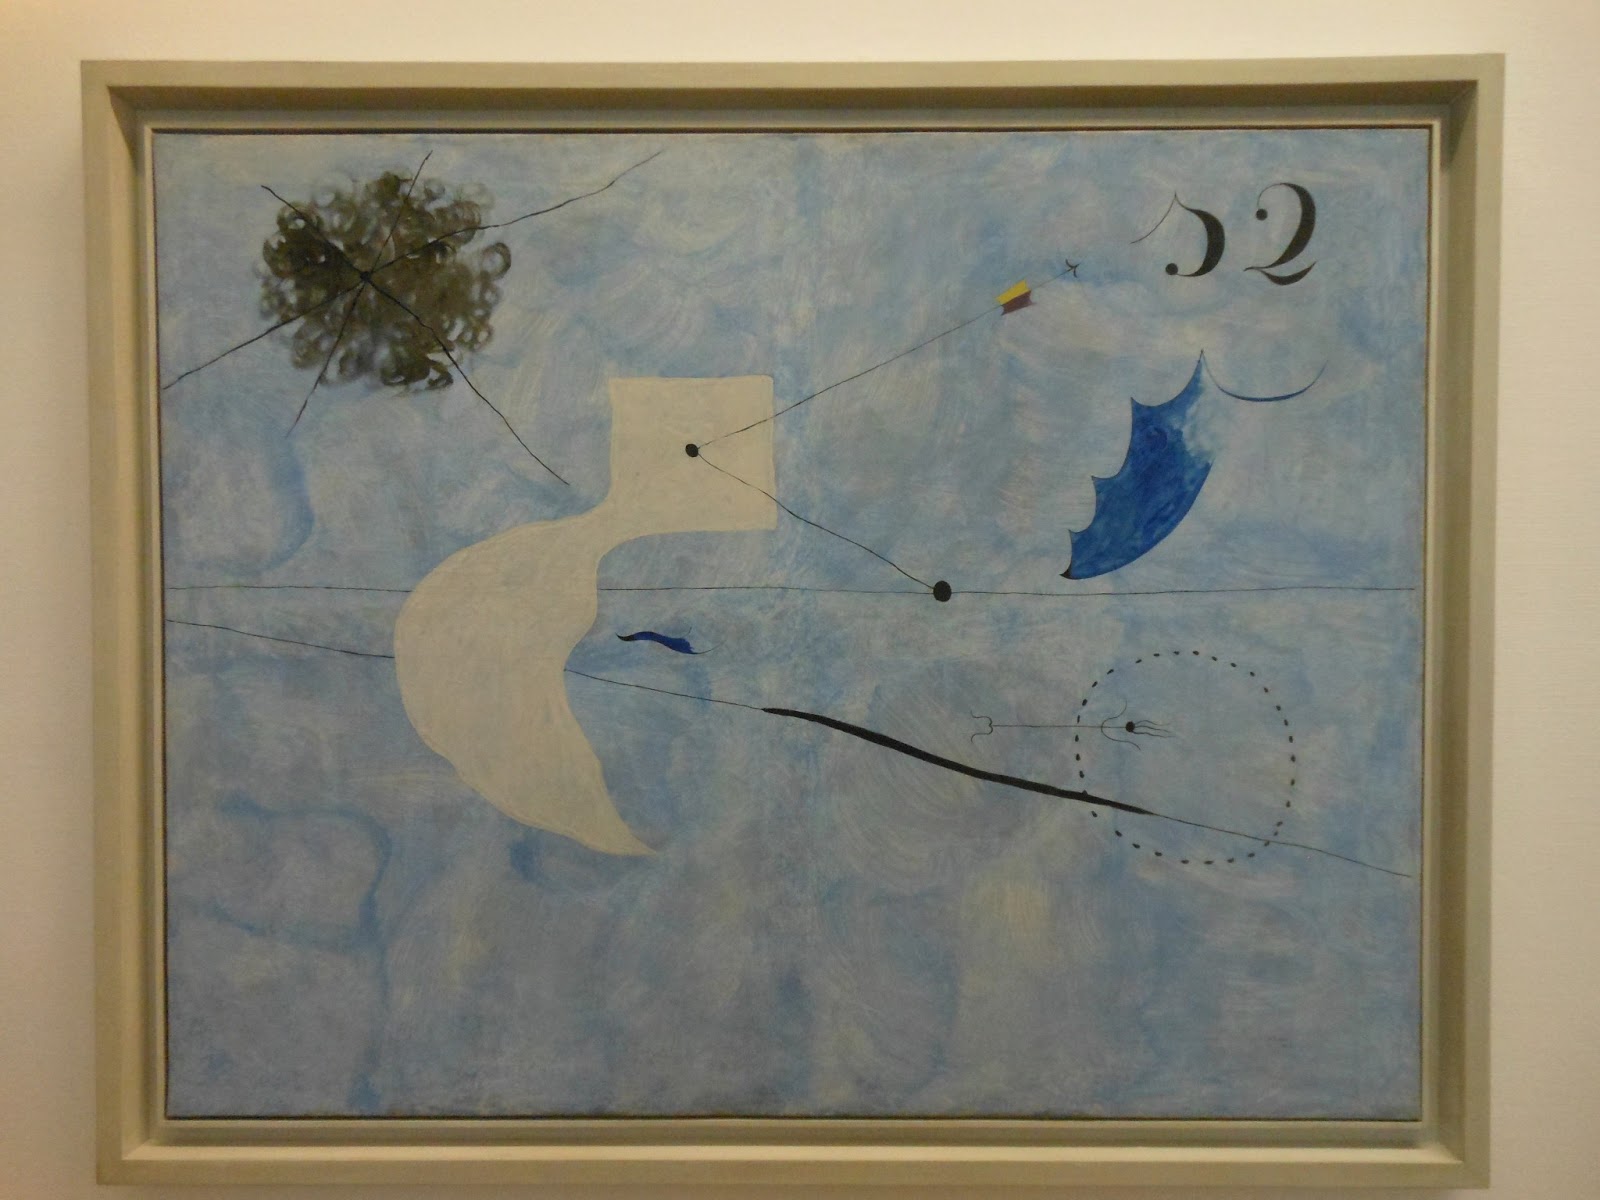 Carnet / Miró / point bleu / Ceci est la couleur / 160 pages / 15 x 21 –  Shop im Picasso-Museum